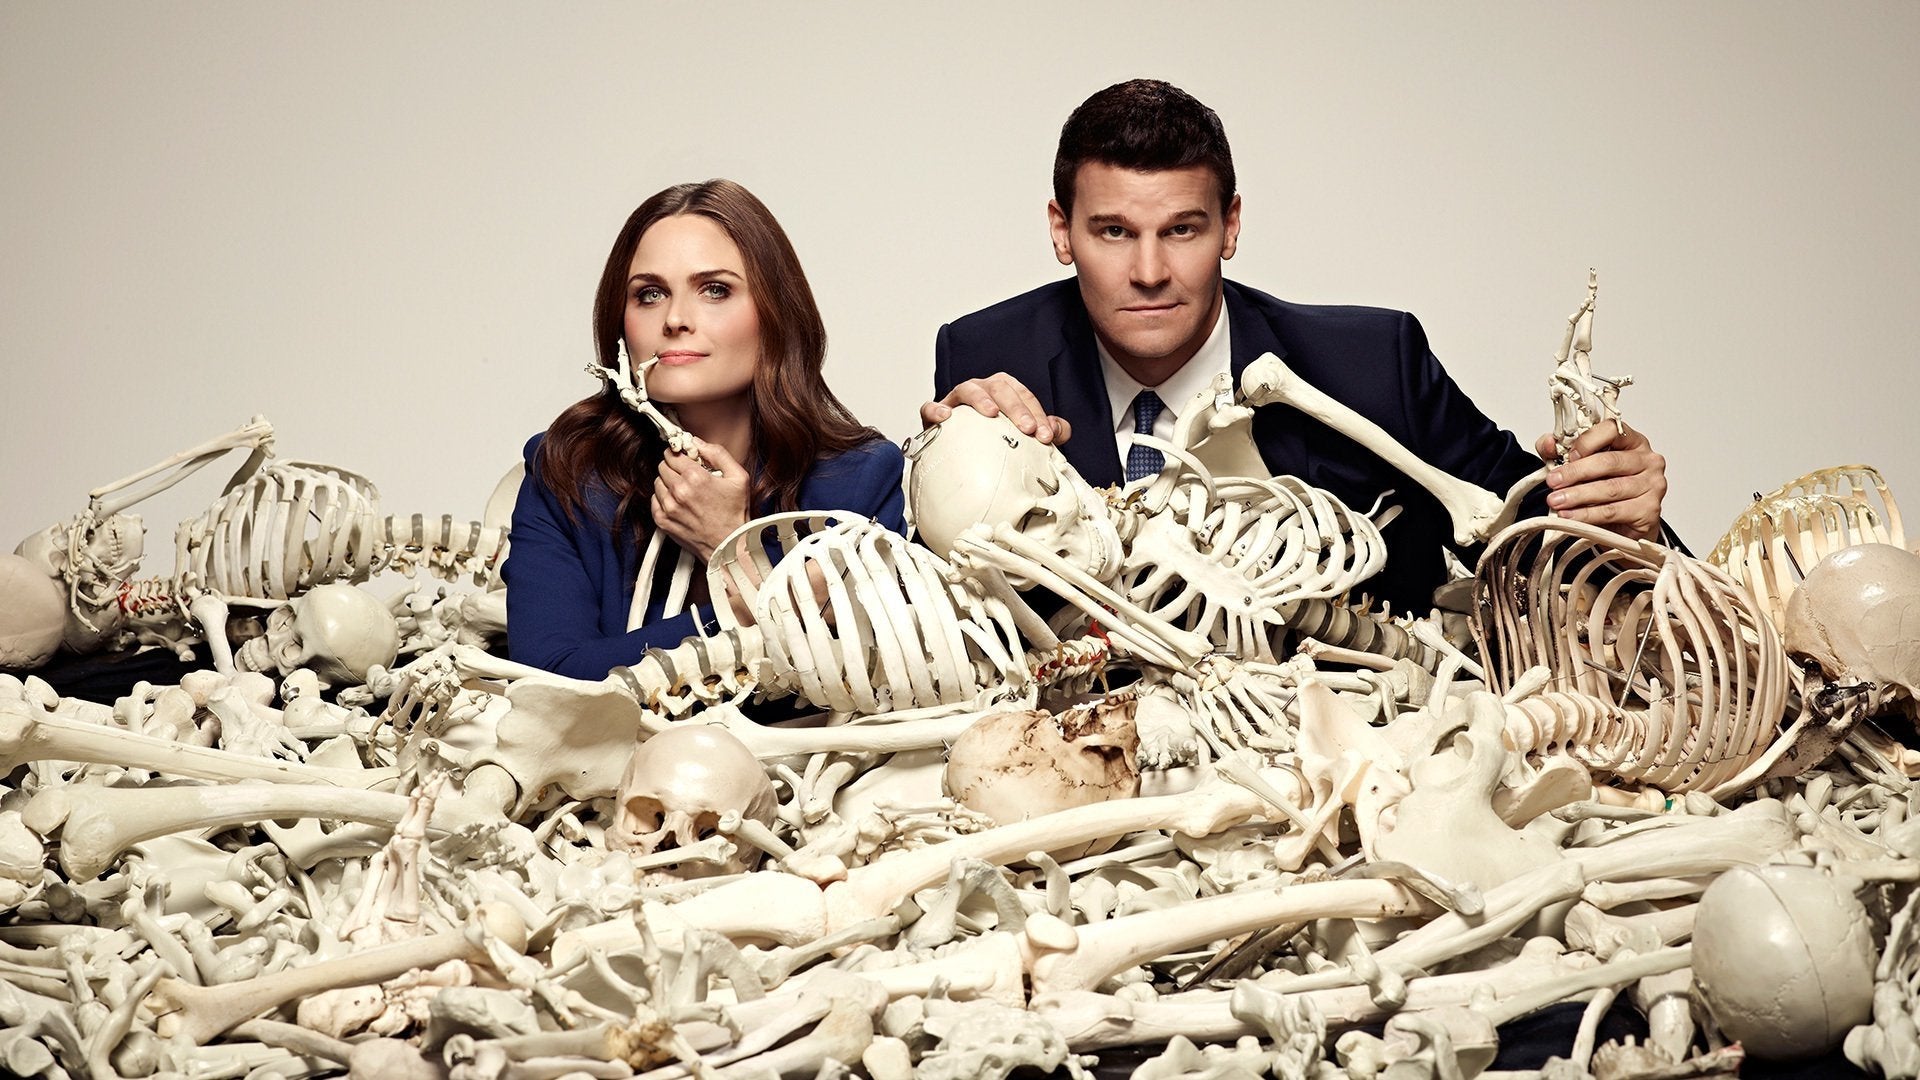 Bones: The Complete Series - Seasons 1-12